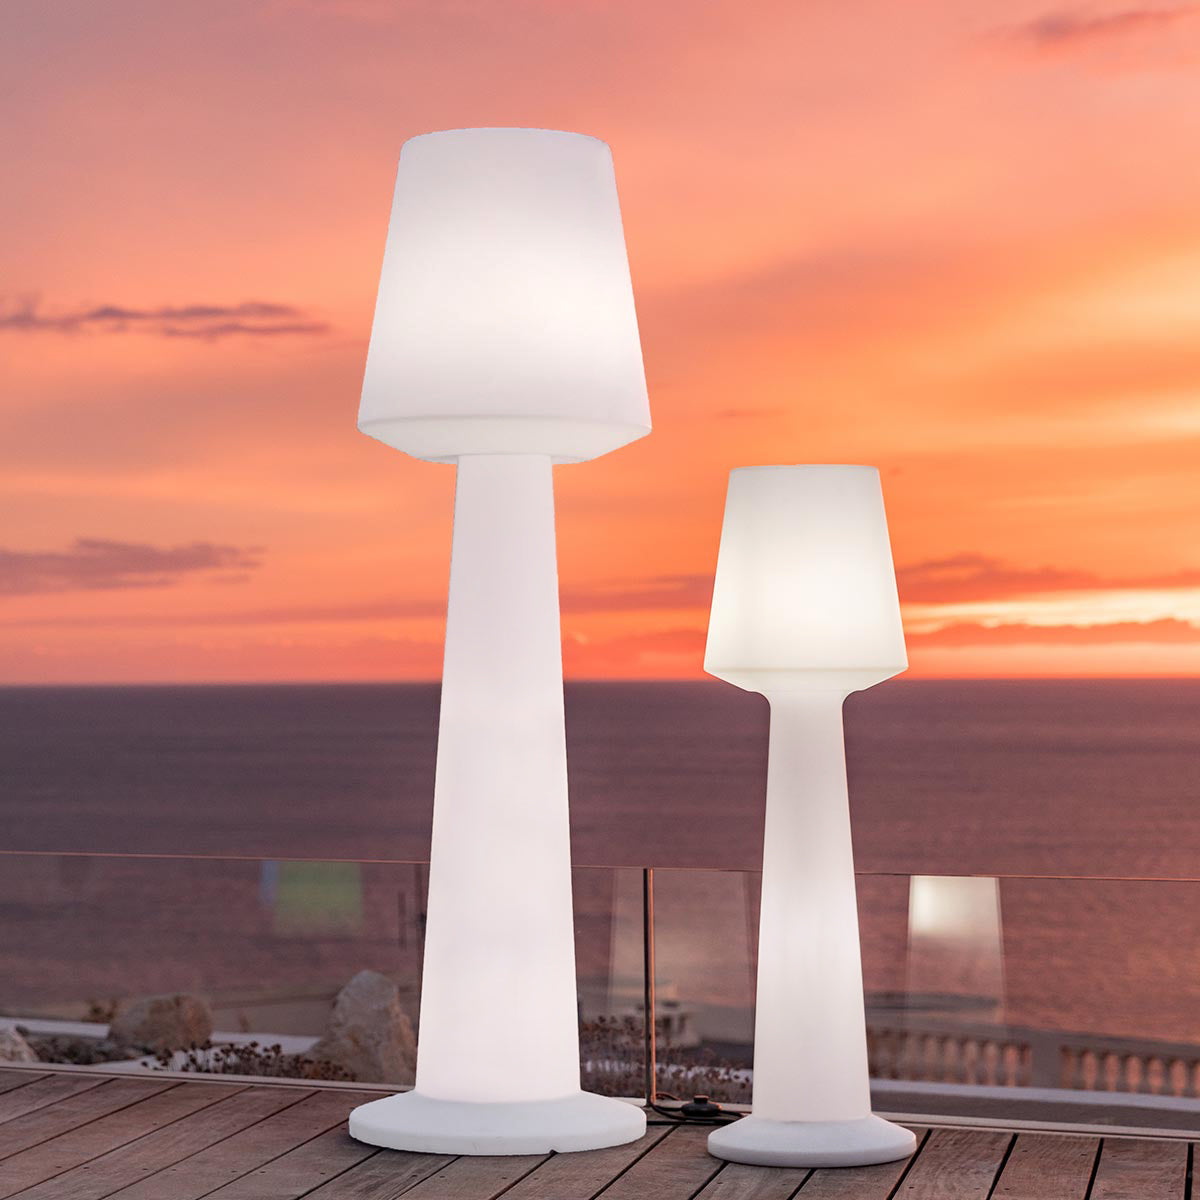 Designer wired light floor lamp for outdoor use powerful white LED lighting AUSTRAL H170cm E27 base